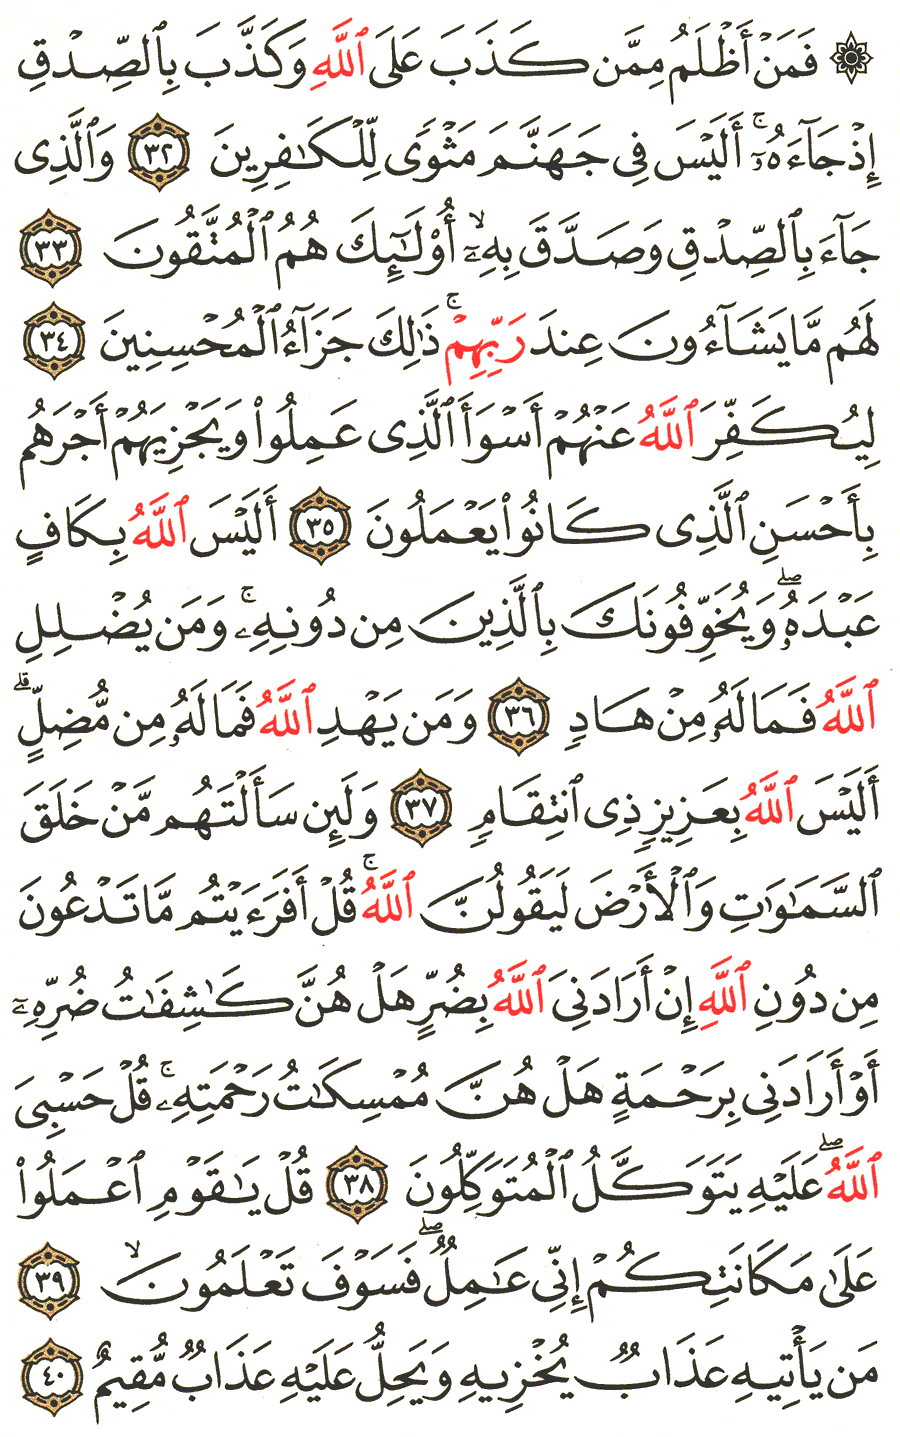 الصفحة 462 من القرآن الكريم